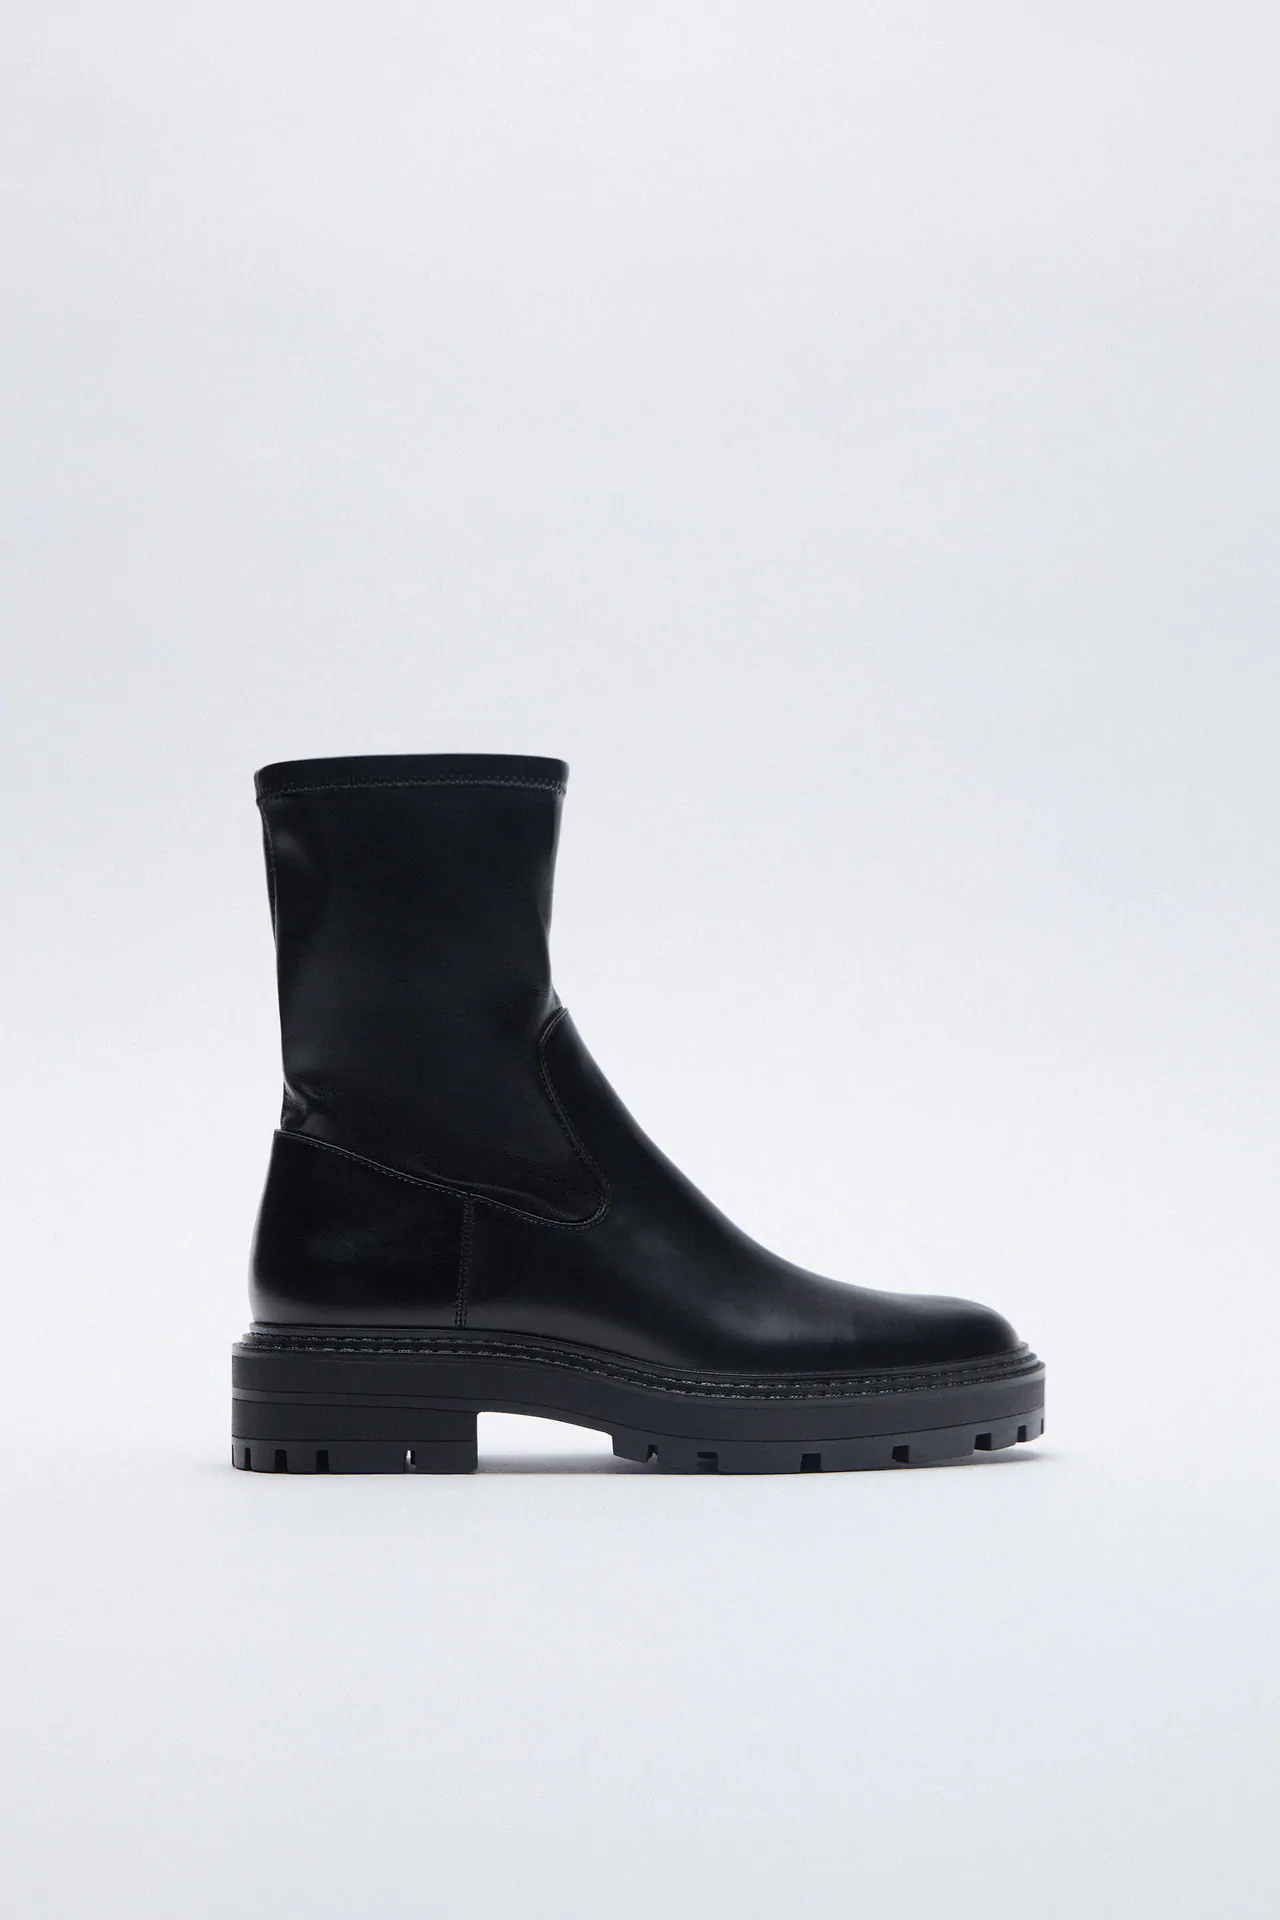 Zara + Low Heeled Lug Sole Ankle Boots